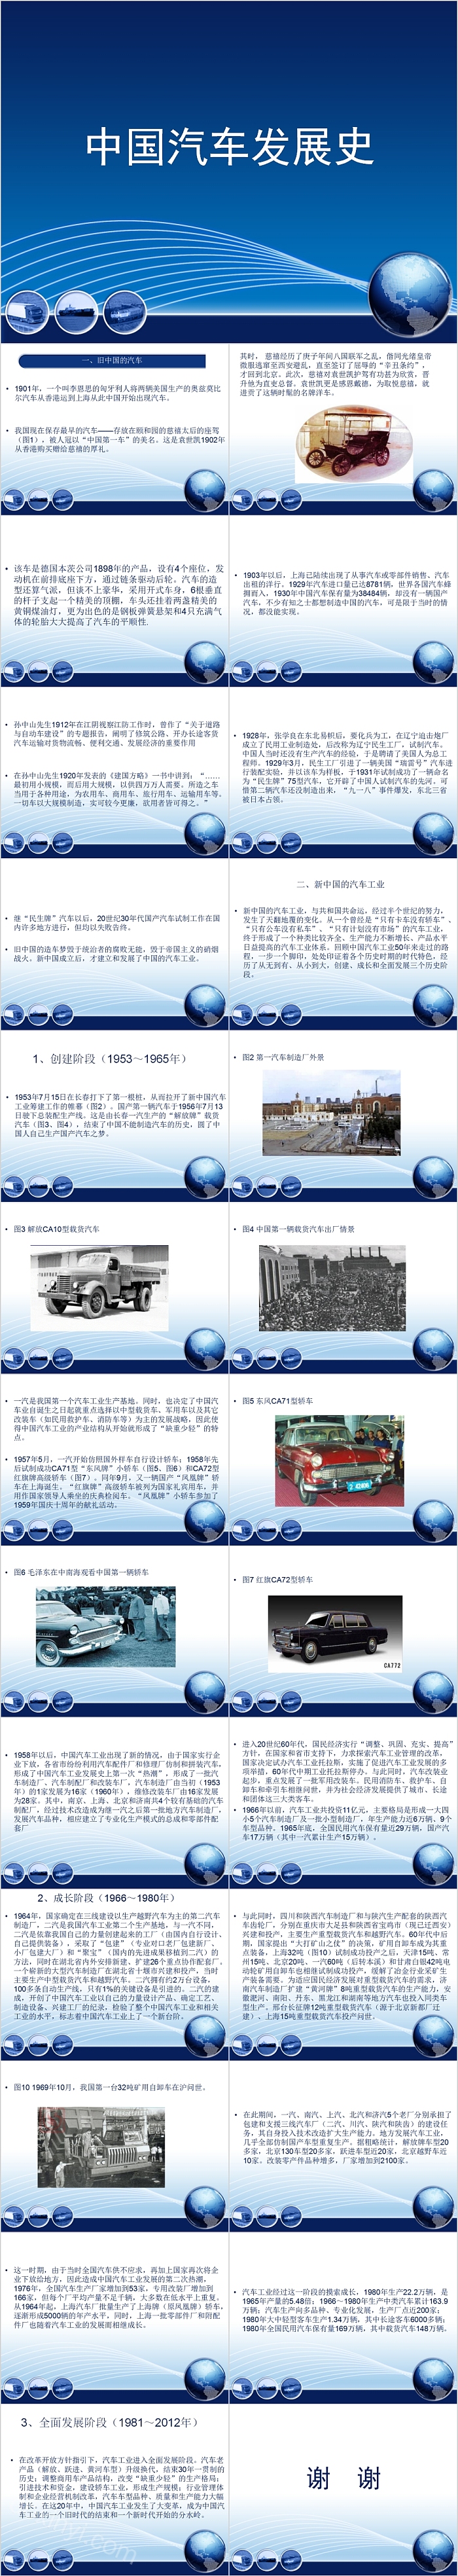 蓝色大气中国汽车发展史PPT模板